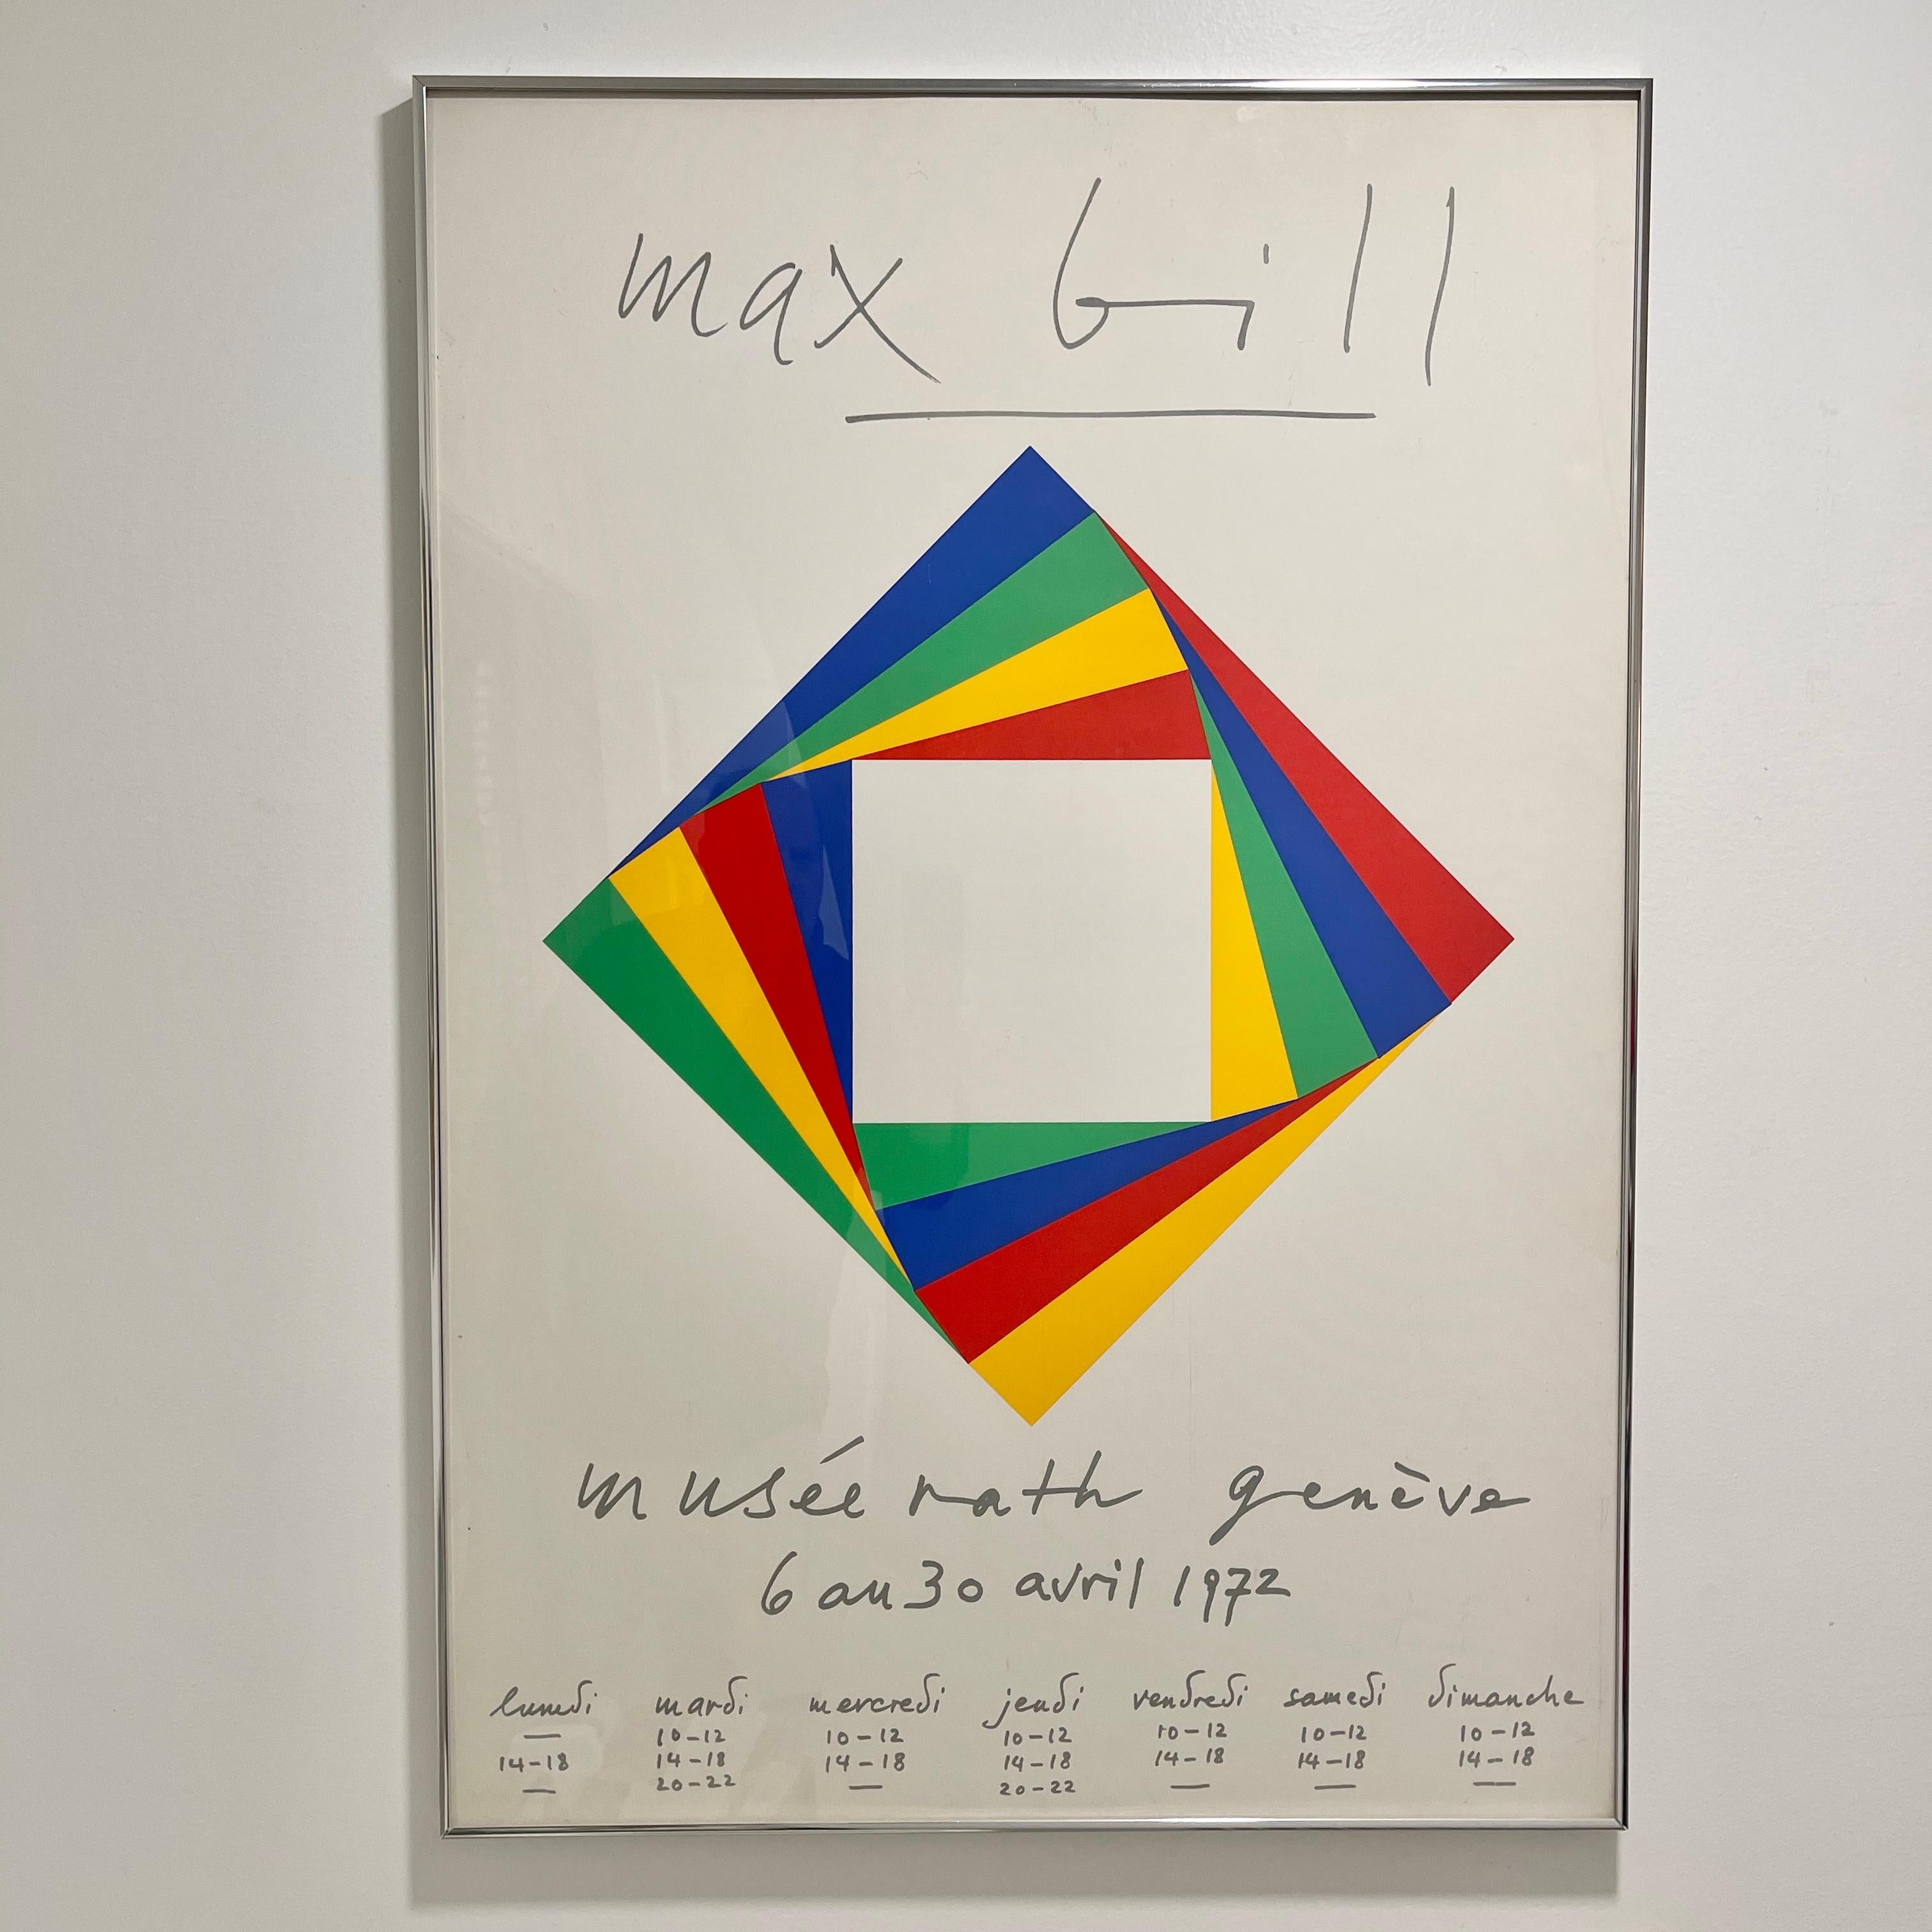 Sérigraphie de l'exposition du Musée de Genève Max Bill (1908-1994), créée pour accompagner l'exposition d'œuvres de Max Bill qui s'est tenue du 6 avril au 30 avril 1972 au Musée Rath à Genève, en Suisse.
Présenté sous verre avec un cadre en métal